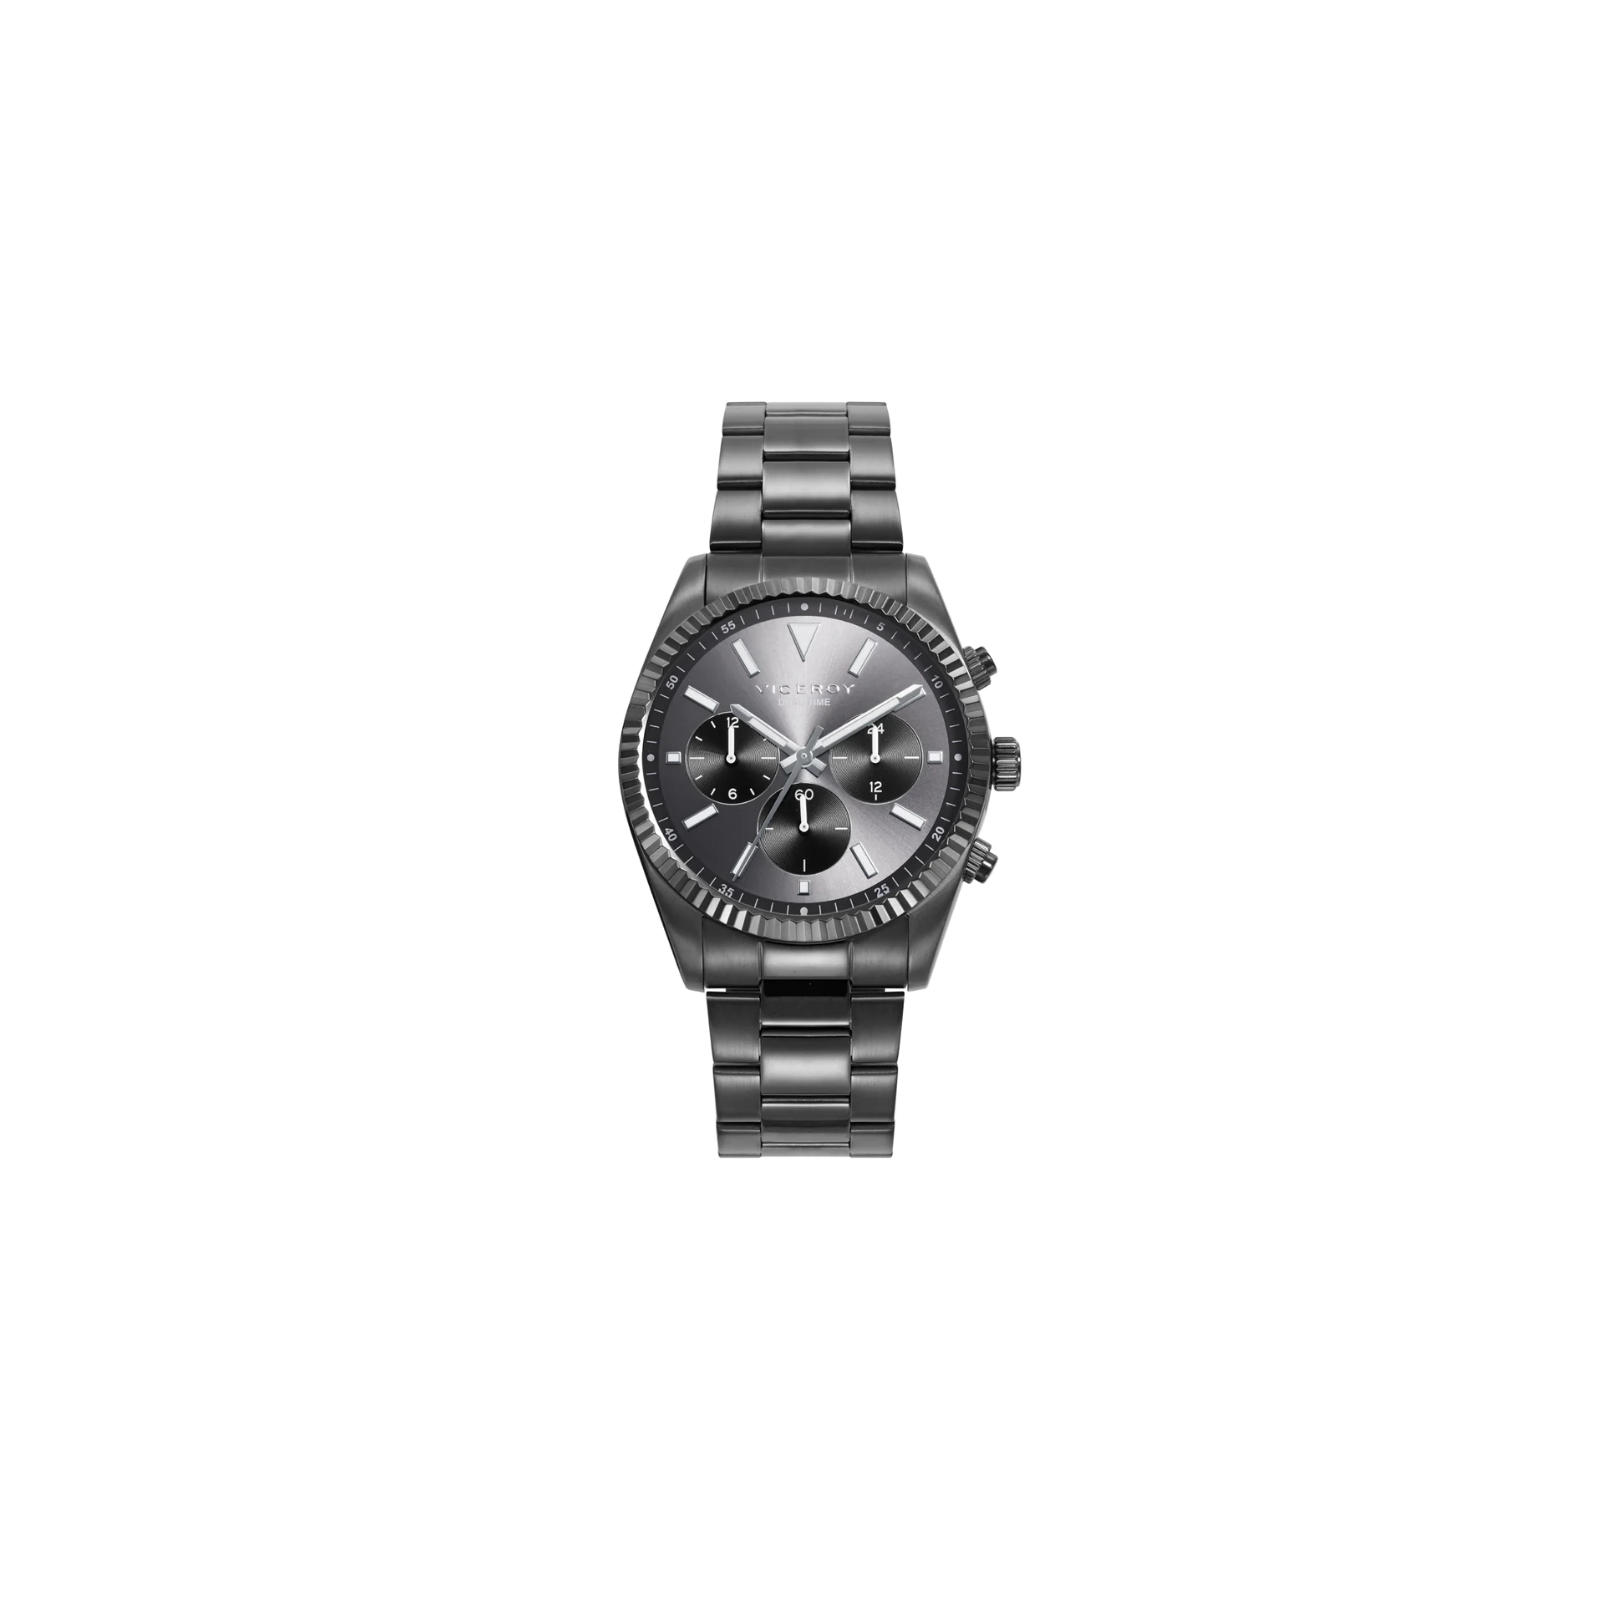 Reloj Viceroy hombre 42443-97 - Joyería D. Rincón